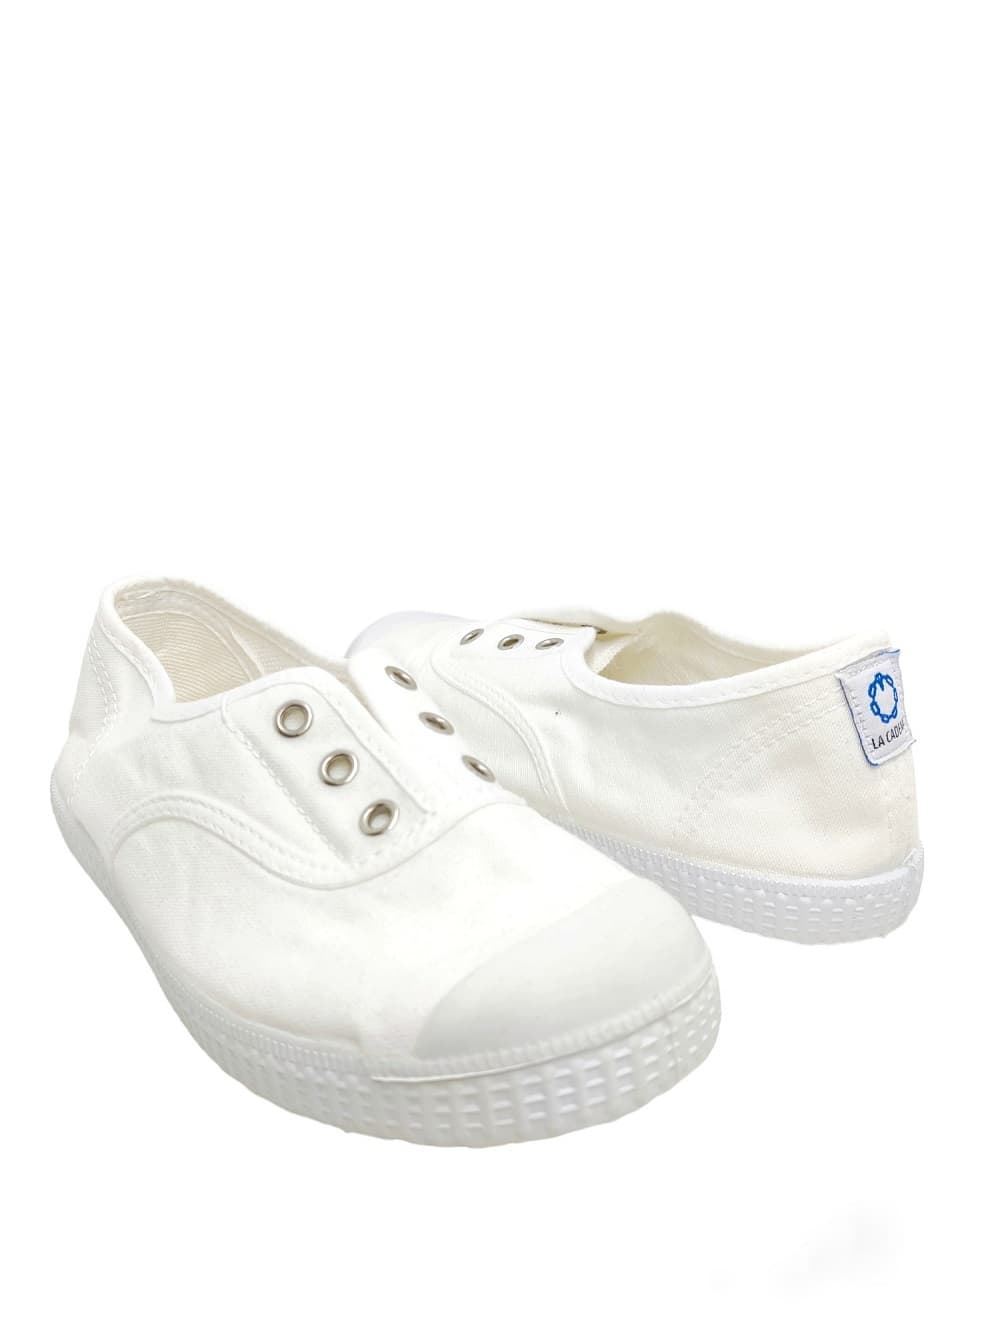 La Cadena Children's Sneakers White Canvas with Toe - Image 1